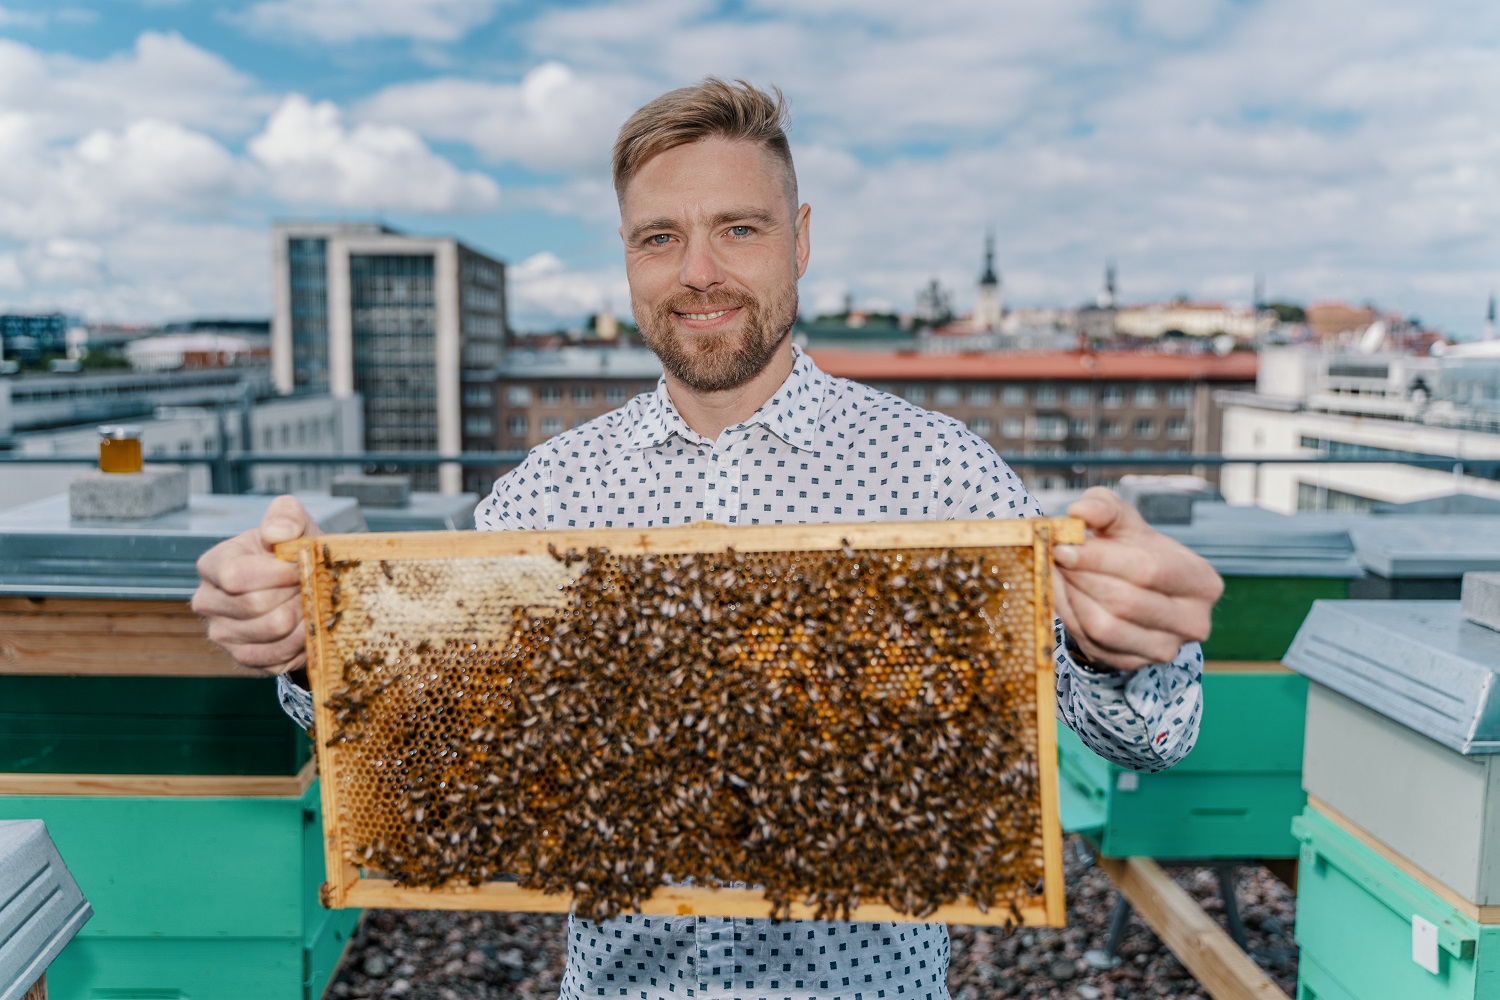 Mesilasprojekti eestvedajaks on meie pangas LHV ettevõtete finantseerimise juht Marko Kiisa, kes on ka ise harrastusmesinik.